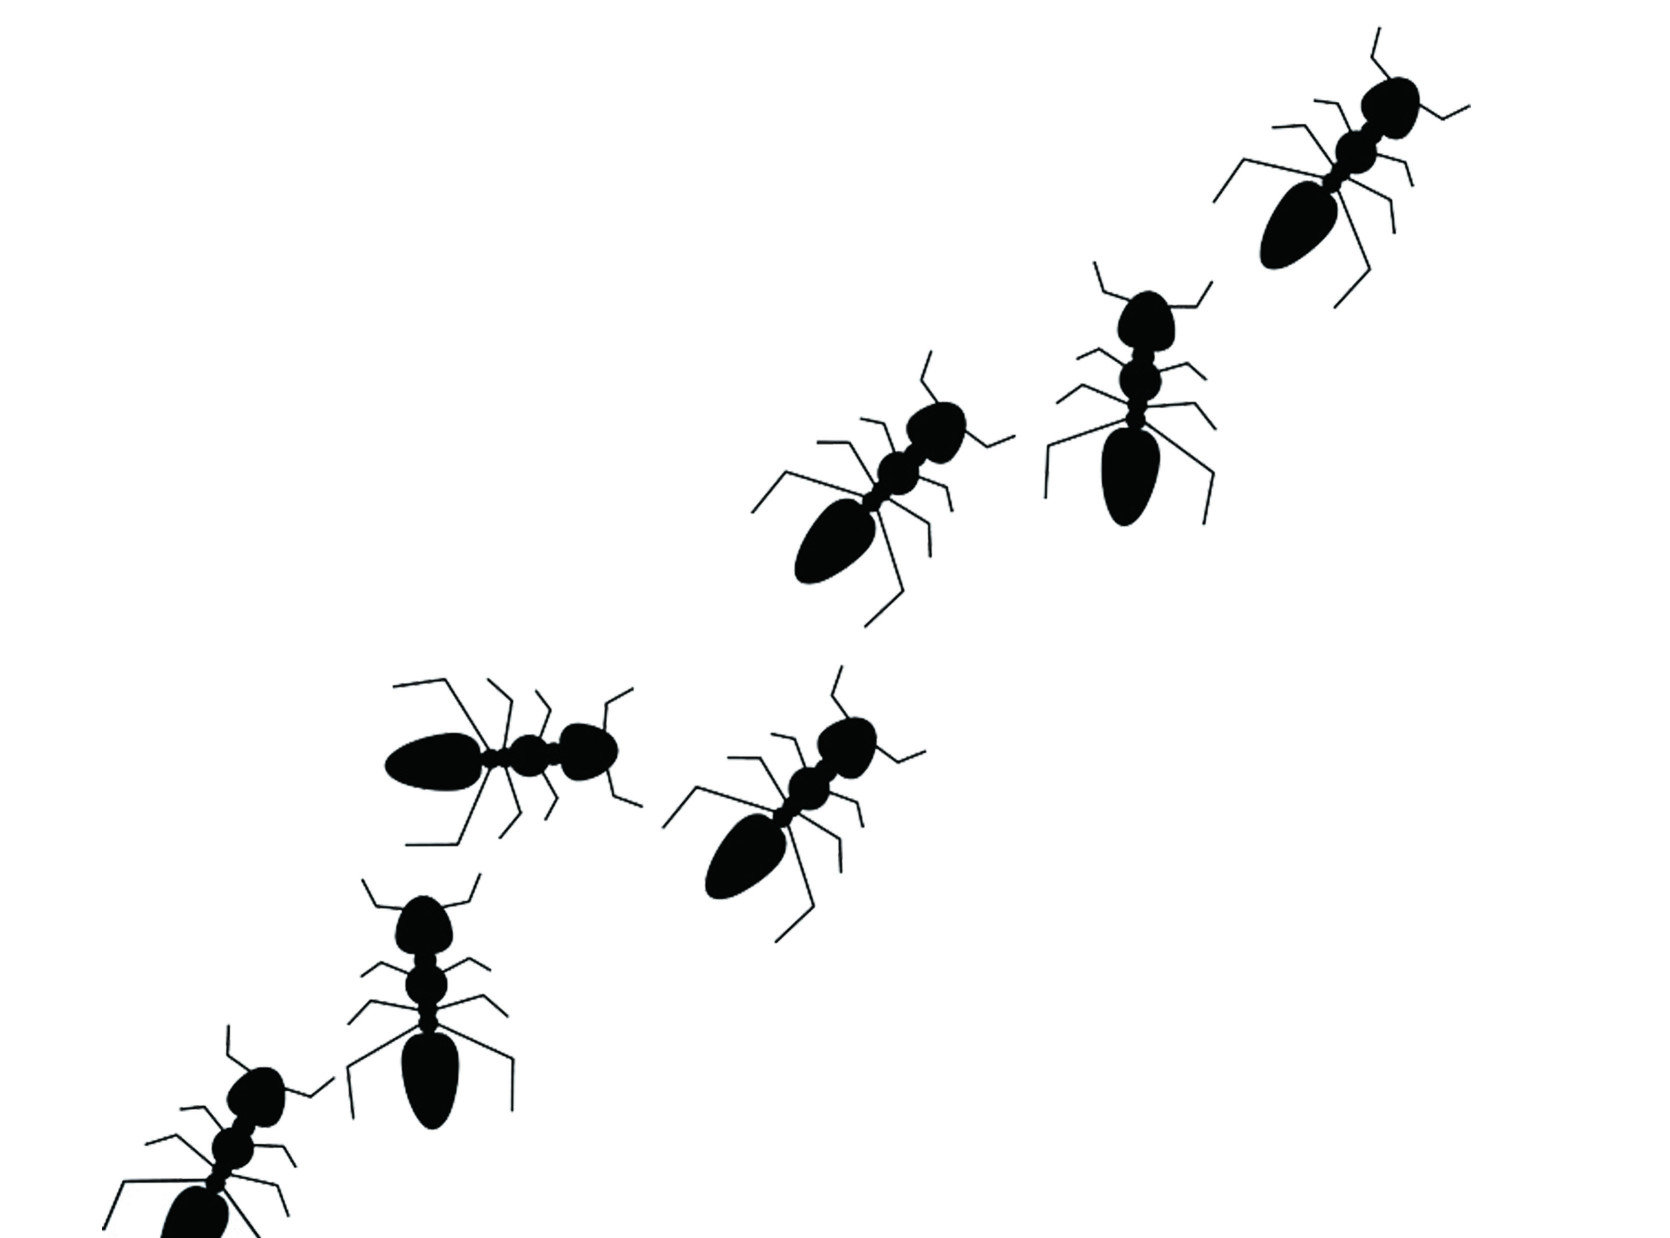 琉璃蟻是分類中的「屬」，其分類底下不只「疣胸琉璃蟻」，還有「白足扁琉璃蟻」與「褐色扁琉璃蟻」。白足扁琉璃蟻顧名思義，牠擁有白色的三雙腳，每一隻腳上都有一環白色，非常好辨識。而褐色扁琉璃蟻雖然與疣胸琉璃蟻比較相似，沒有那麼容易辨識，但牠們有幾項絕對性的不同。